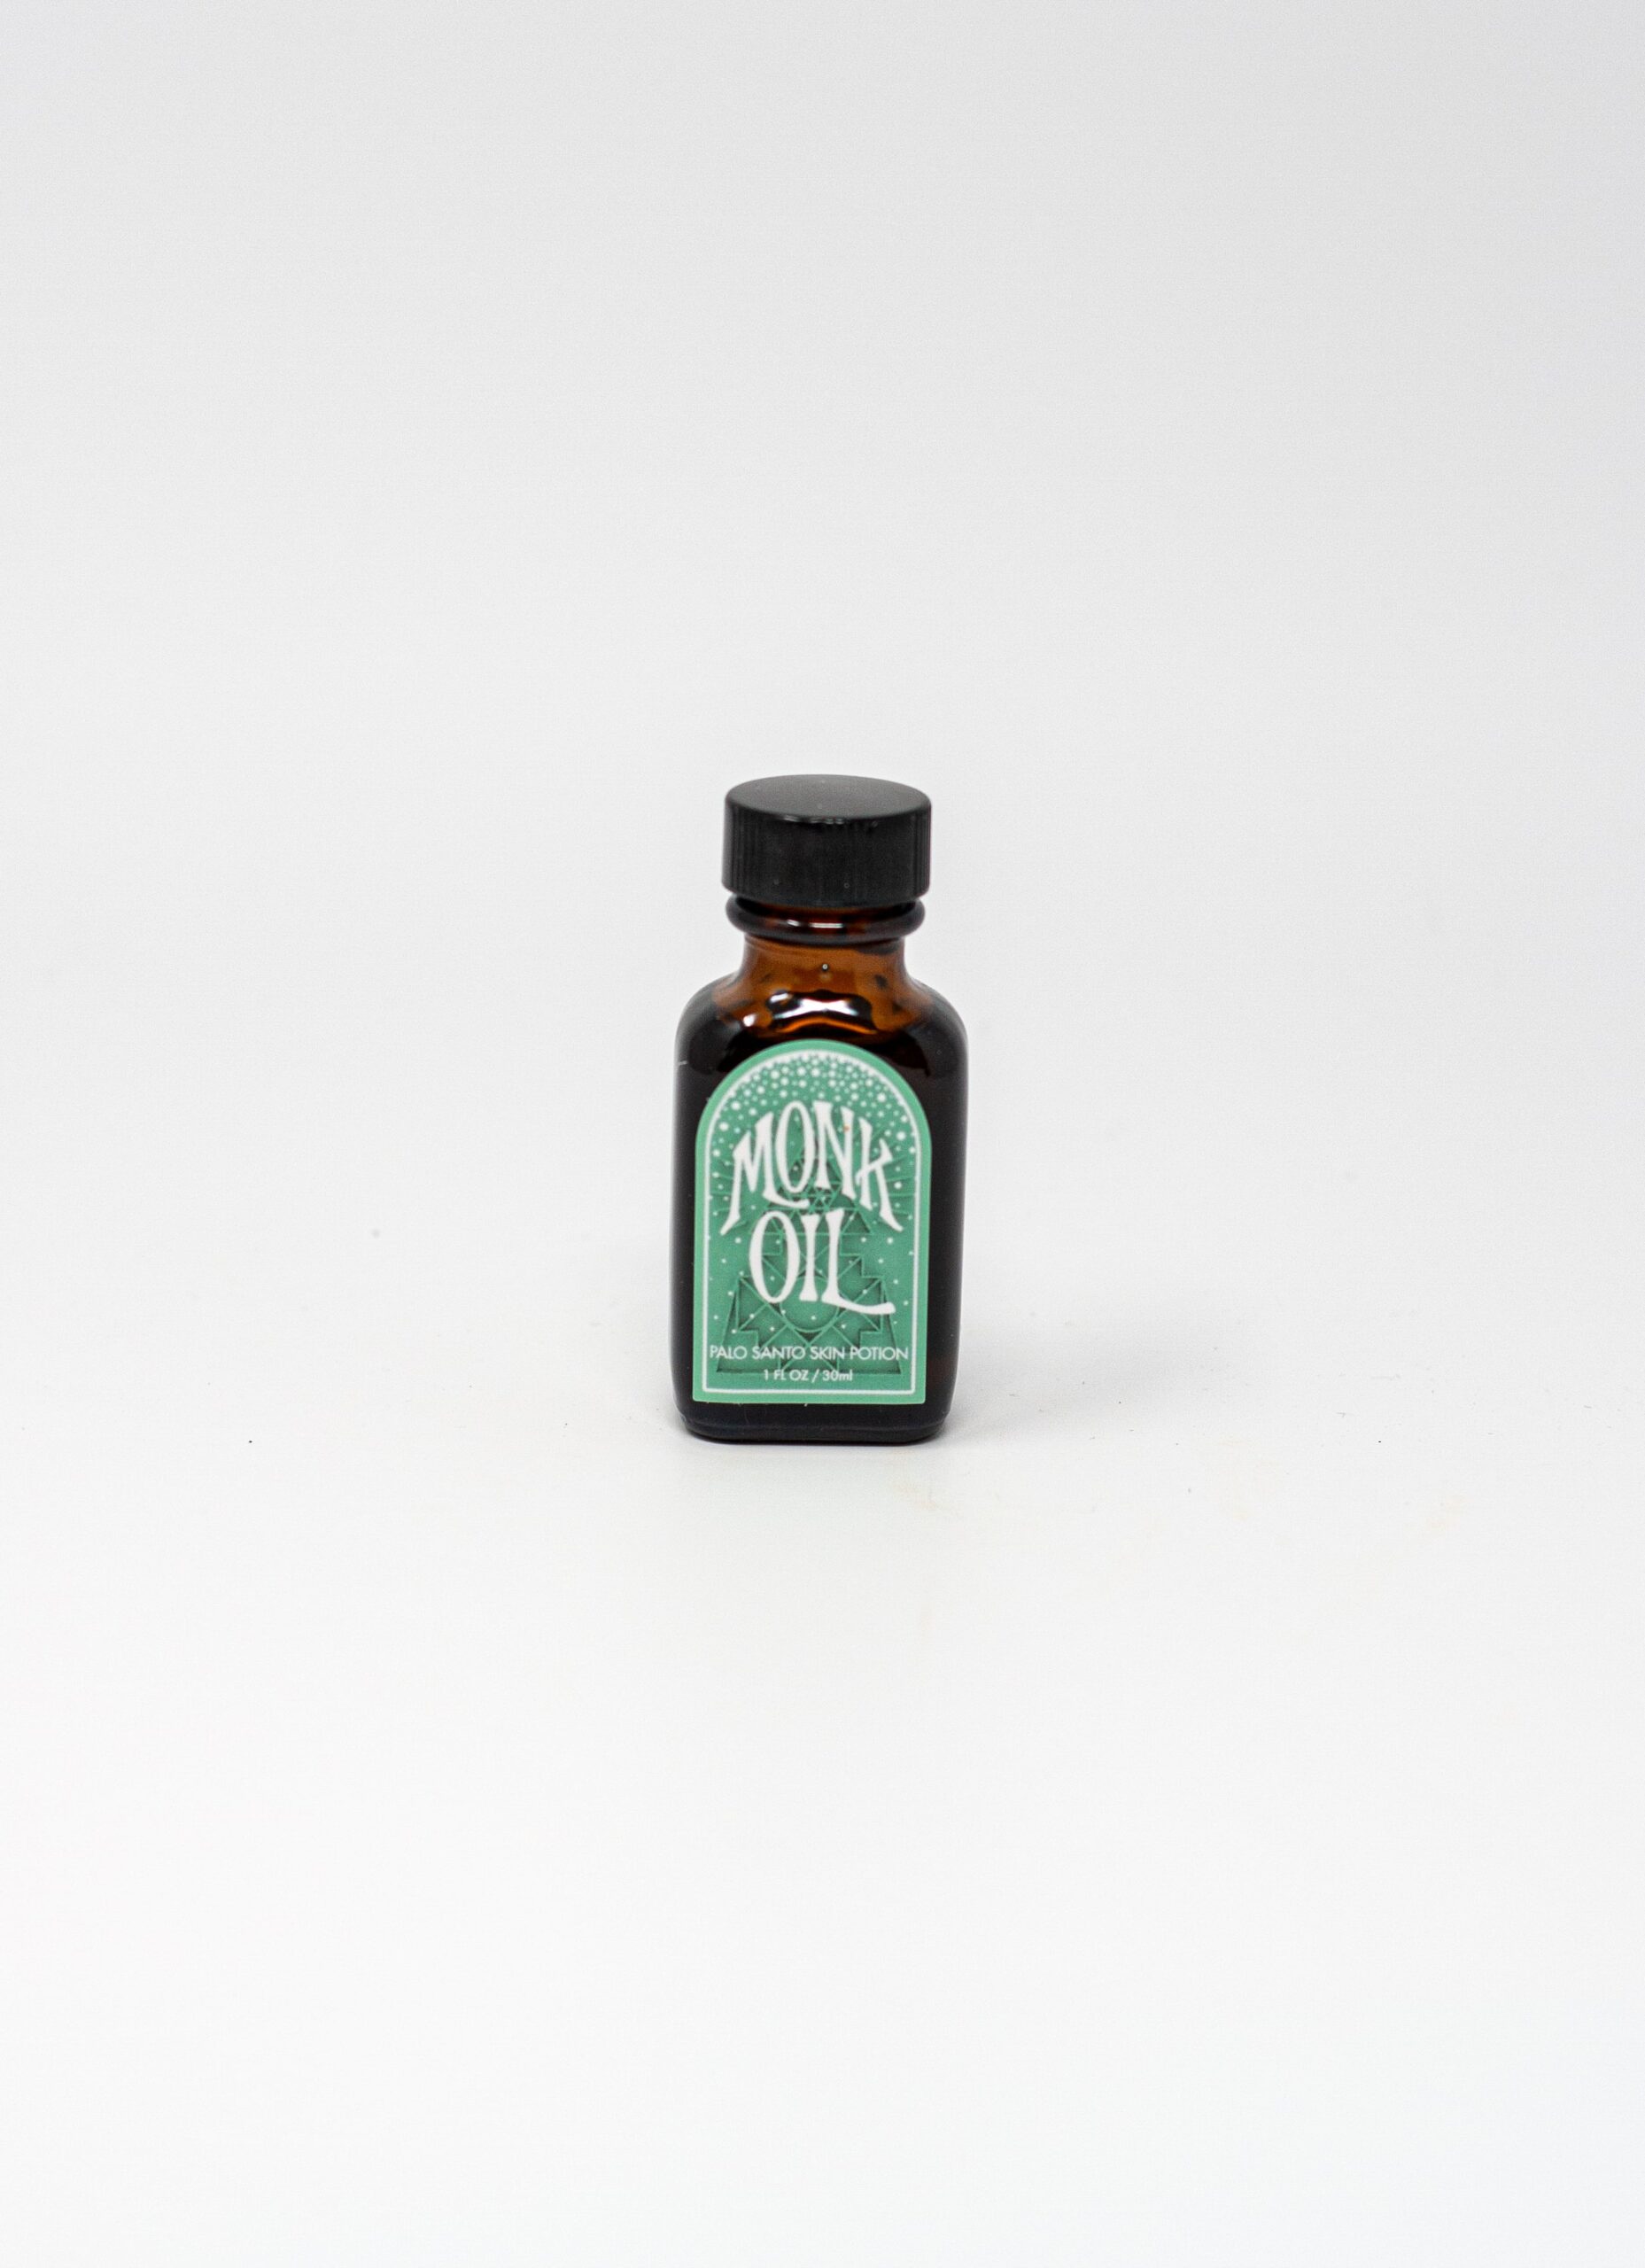 Incausa - Monk Oil - Palo Santo Skin Potion - 1oz-30ml